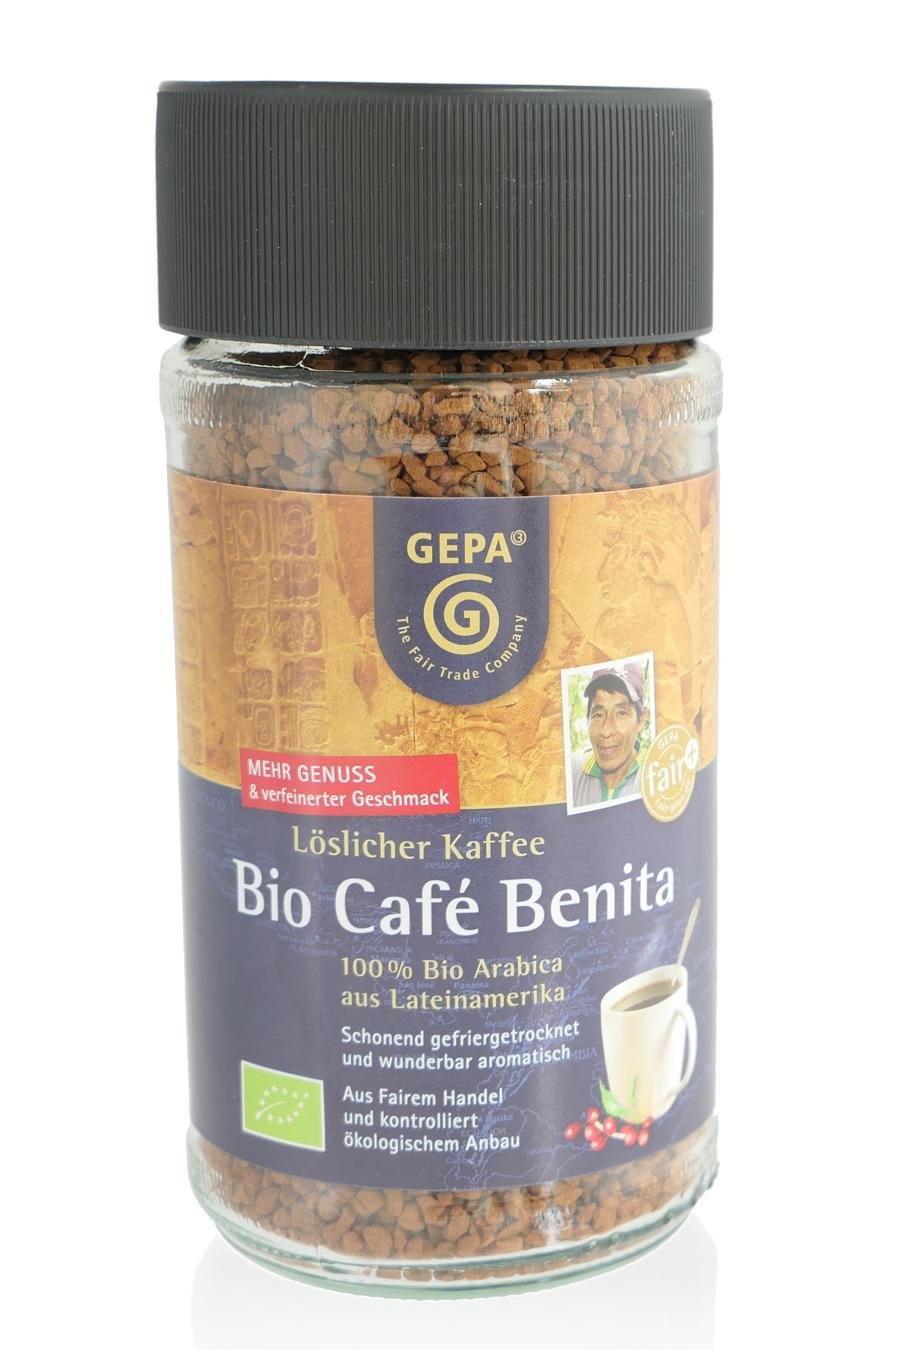 Kaffee Benita (c) M. Kerk